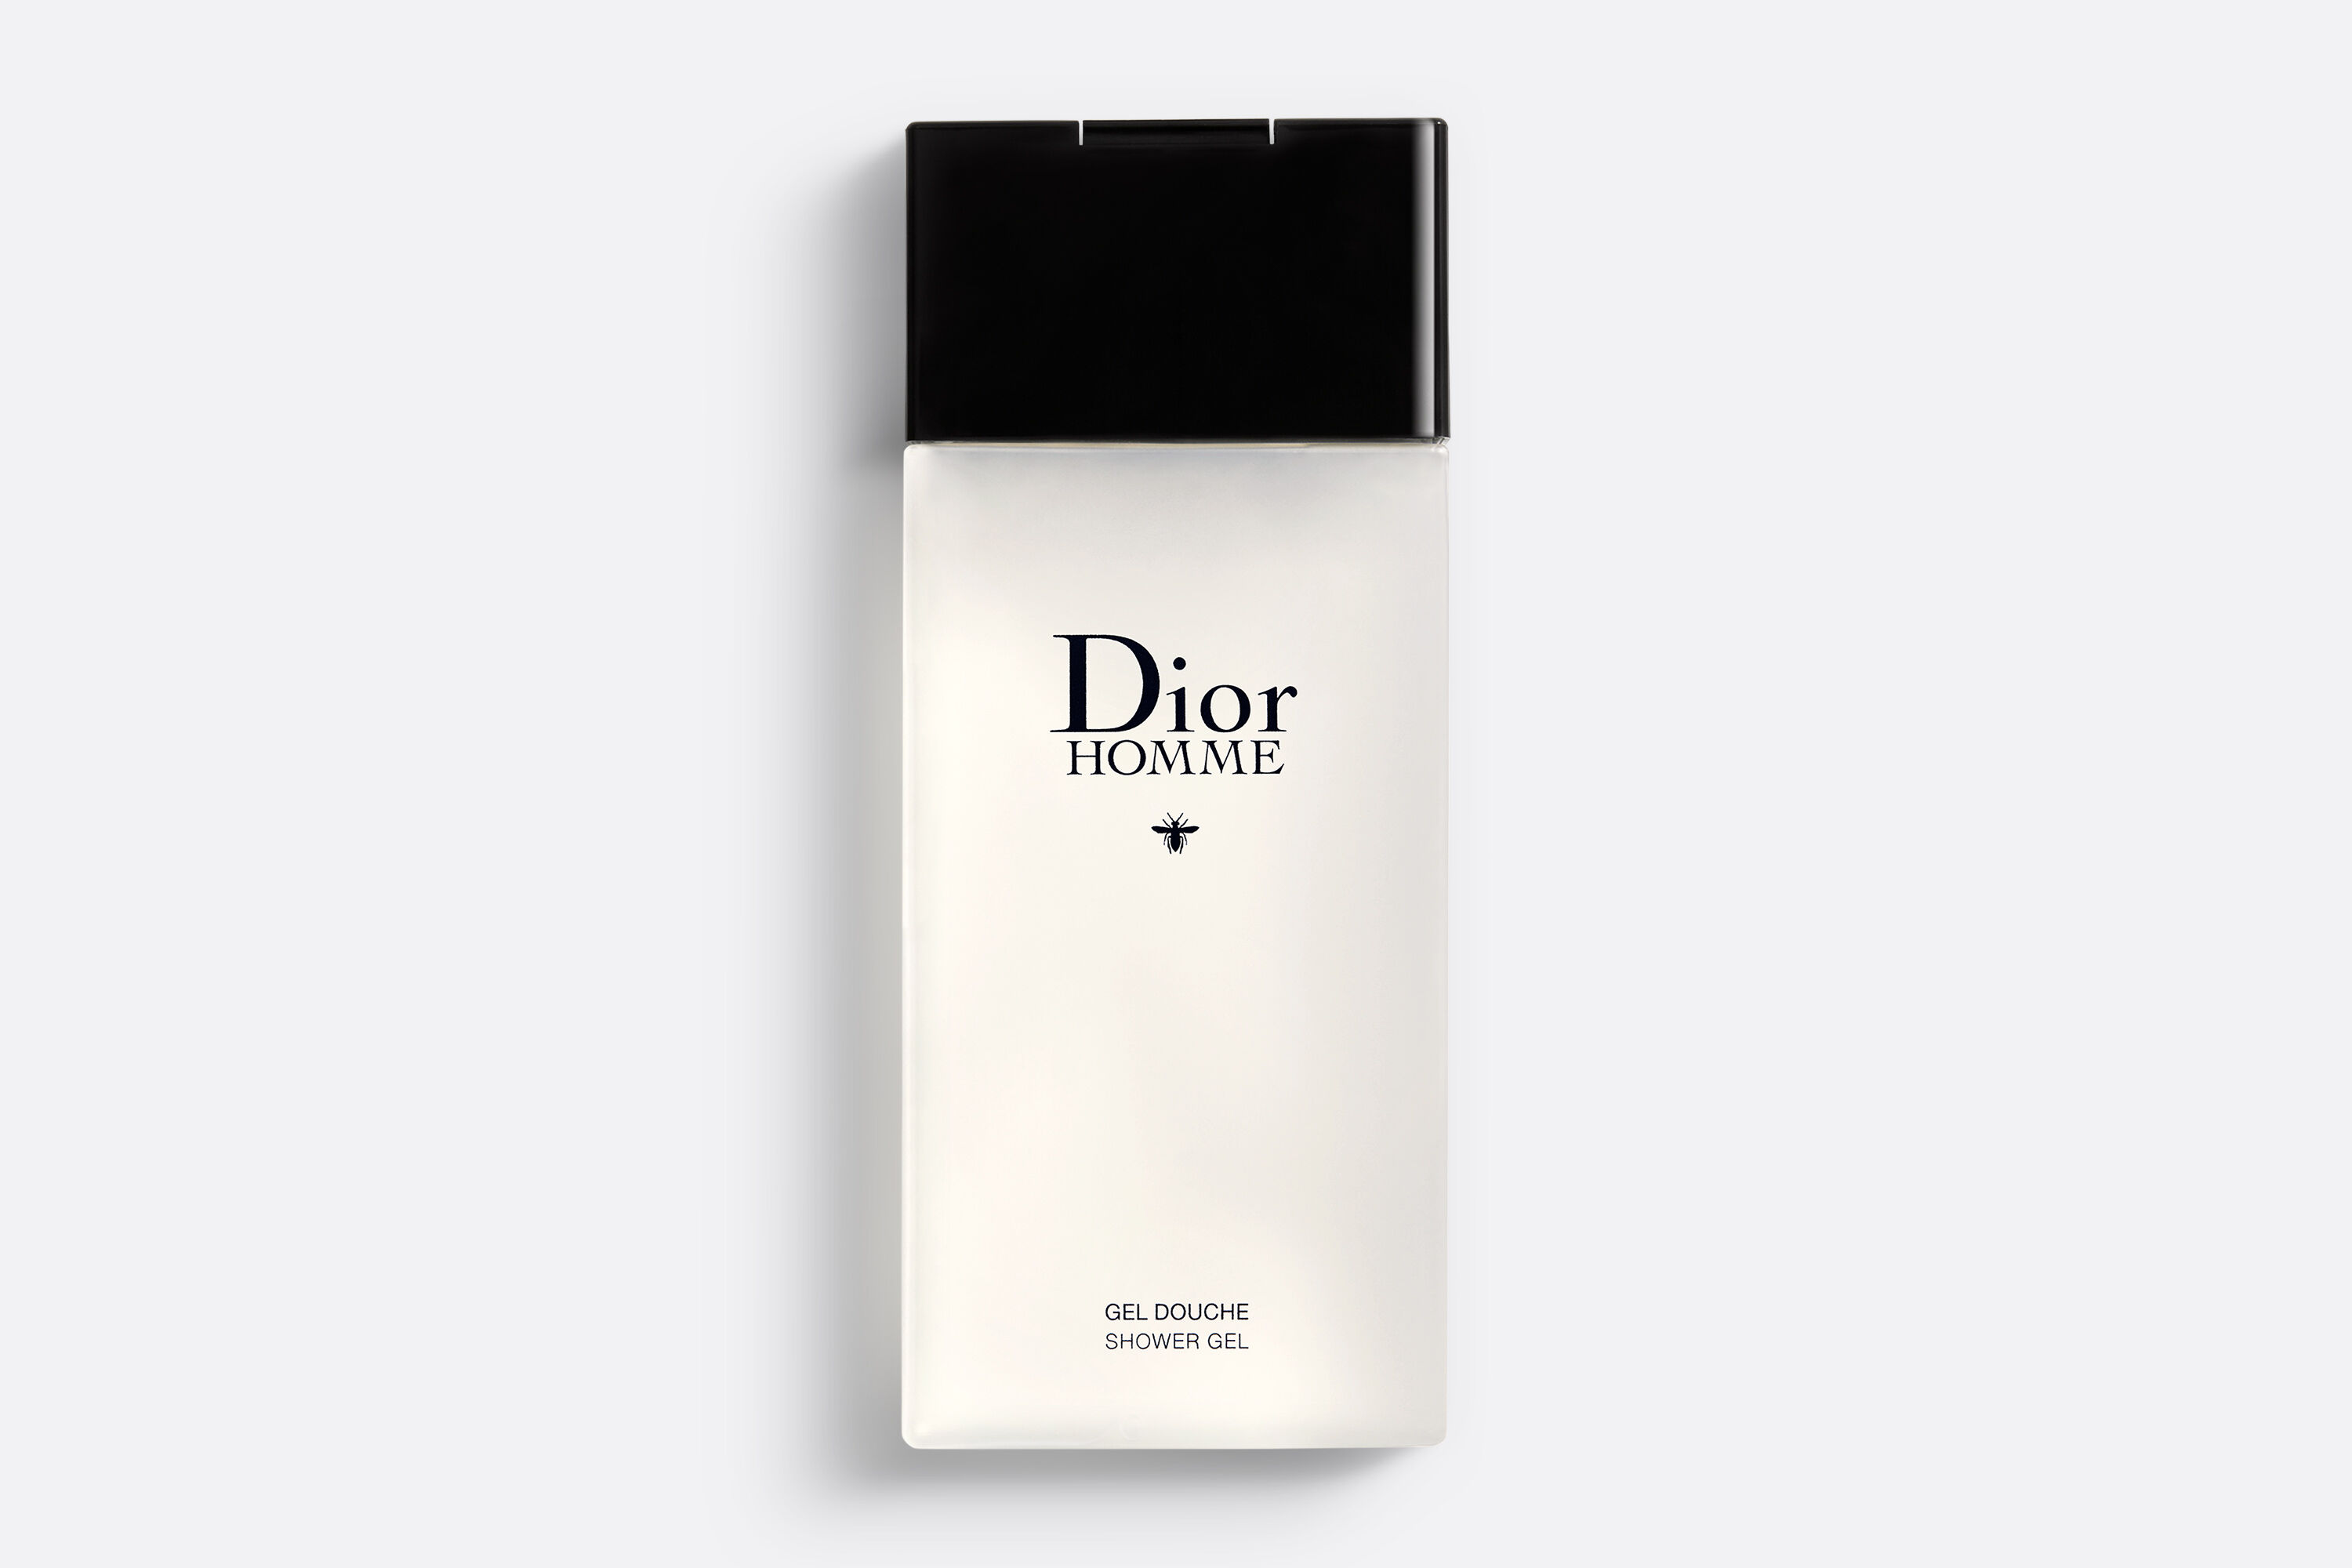 Dior Homme EDT 10ml034floz  Shower Gel 20 ml067floz NIB  eBay